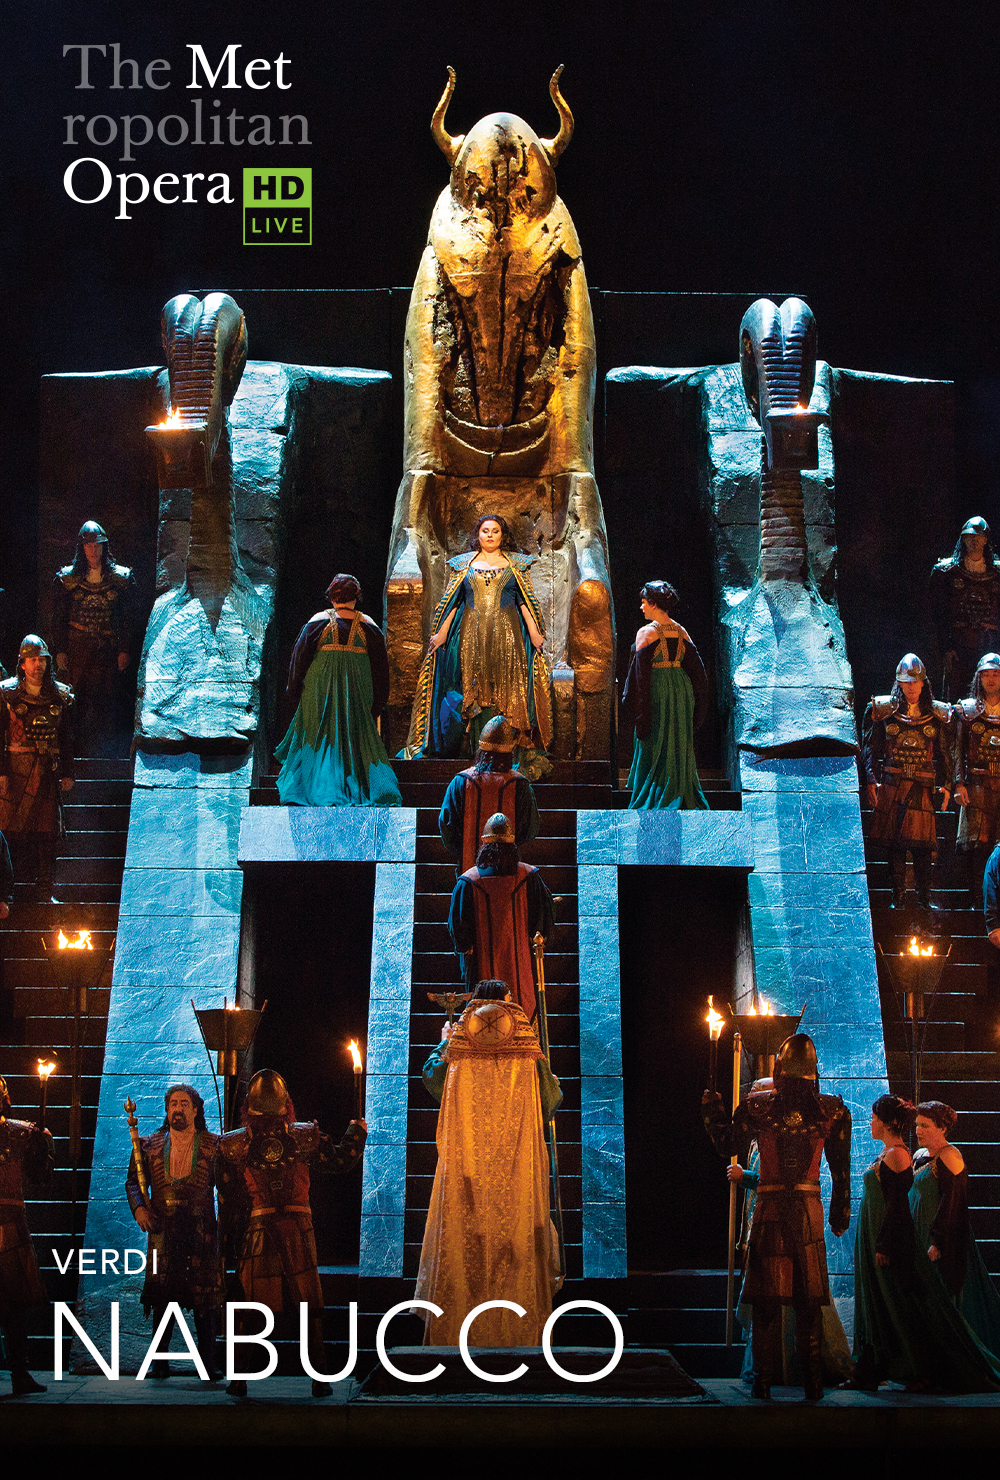 MET Opera. Starożytny Babilon na scenie